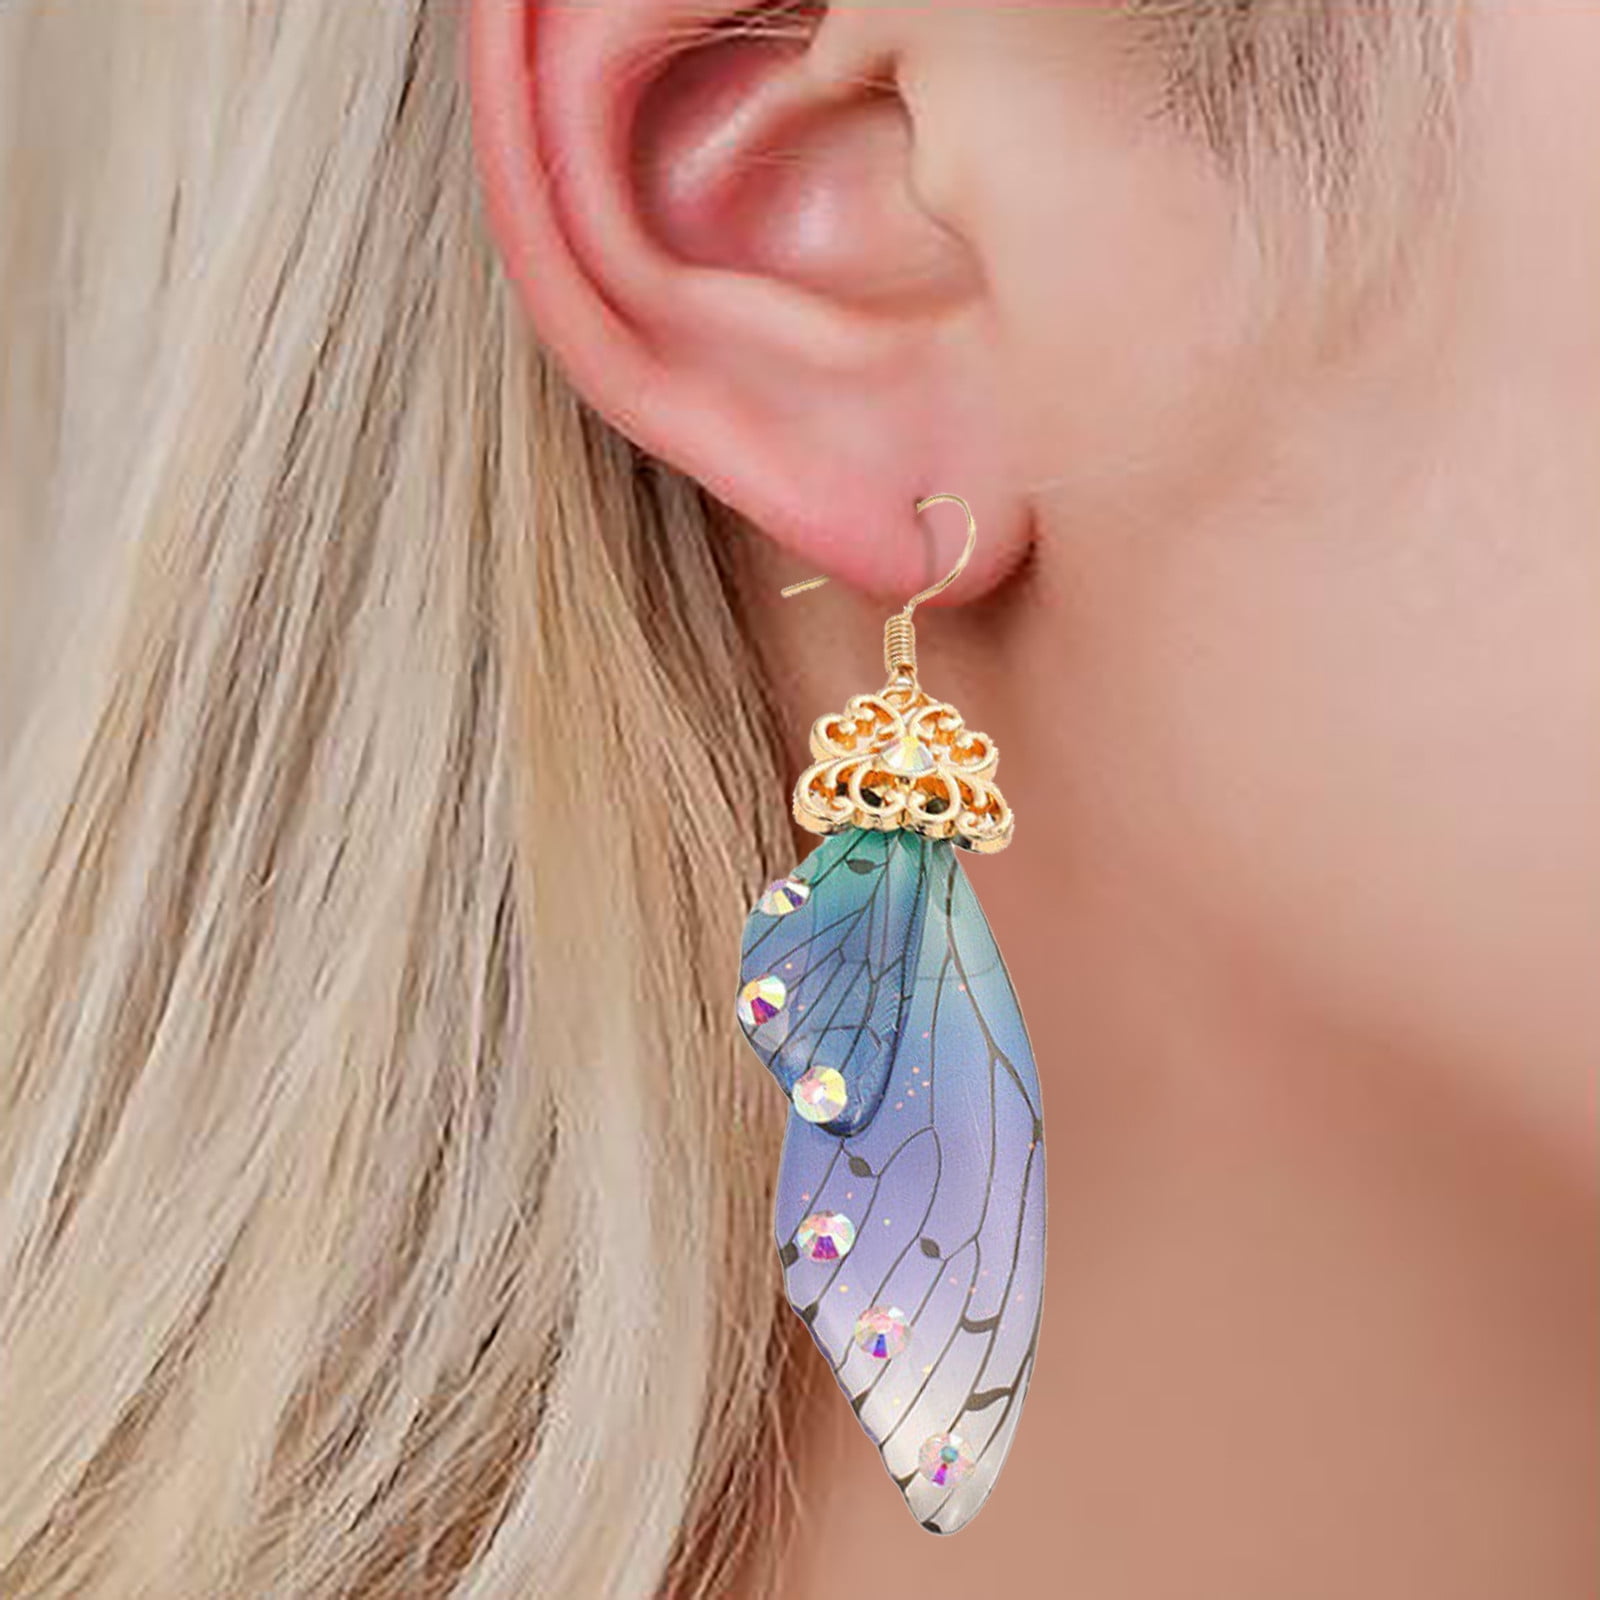 Gold wing earrings gold dangle earrings gold filled earrings fairy wing earrings cute gold earrings angel wings gold wing jewelry